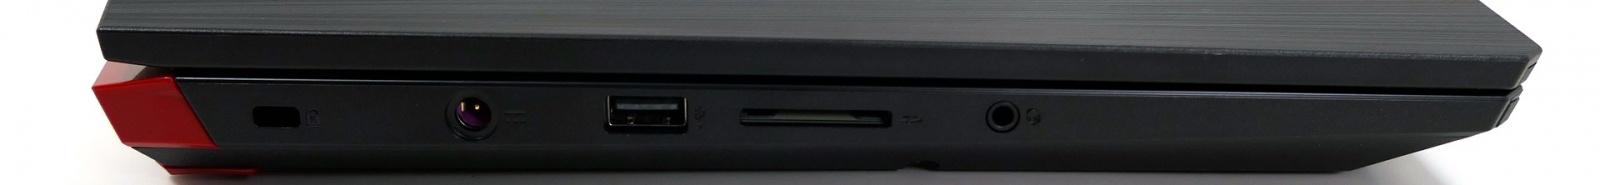 Acer Aspire VX5-591 порты справа